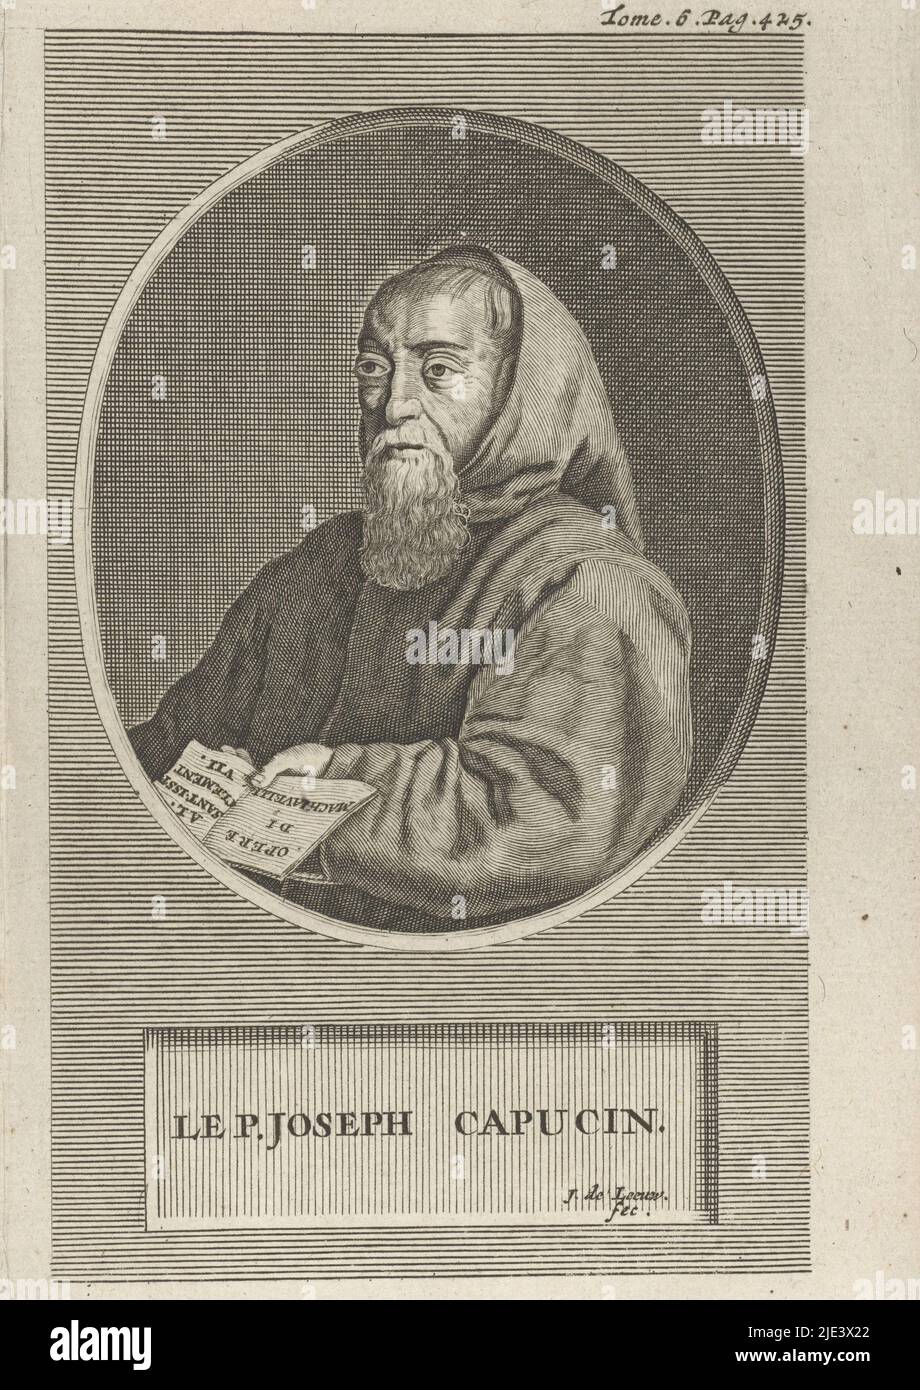 Ritratto di Francis Leclerc du Tremblay, Jan de Leeuw, 1704, Ritratto busto in ovale a sinistra del monaco francese Francis Leclerc du Tremblay, rivestito in una pipa. Sotto il ritratto, una targa elenca il nome della persona raffigurata. Stampa numerata in alto a destra: Tomé. 6. Pag. 425., stampatore: Jan de Leeuw, (menzionato sull'oggetto), 1704, carta, incisione, a 157 mm x l 97 mm Foto Stock